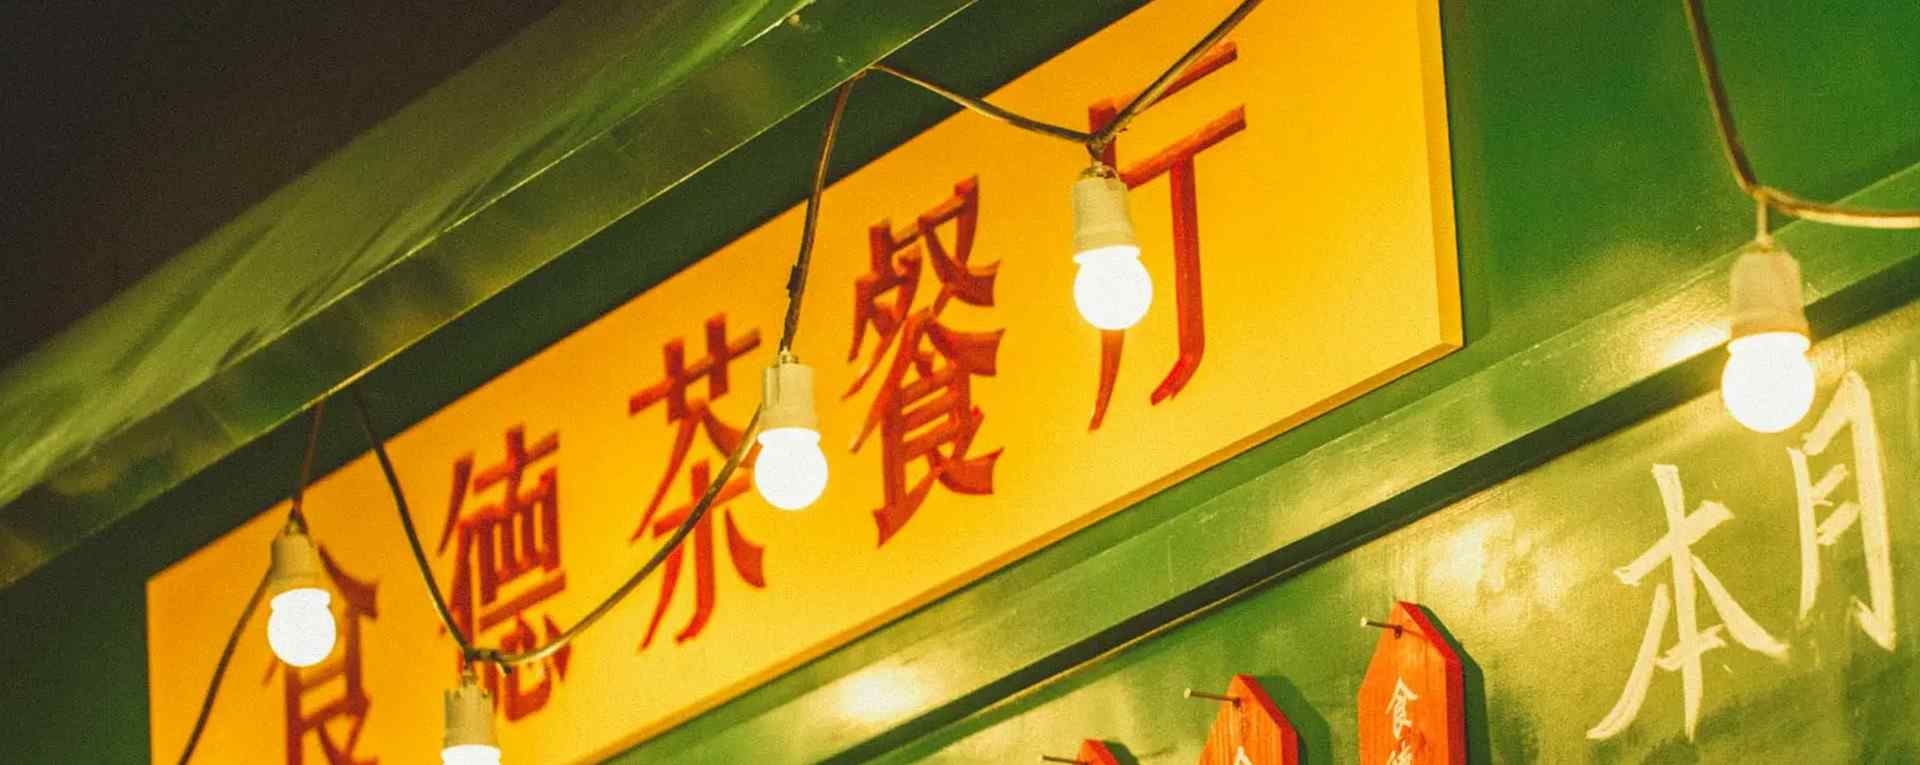 香港茶餐厅_香港特色小吃_香港甜品_香港美食壁纸